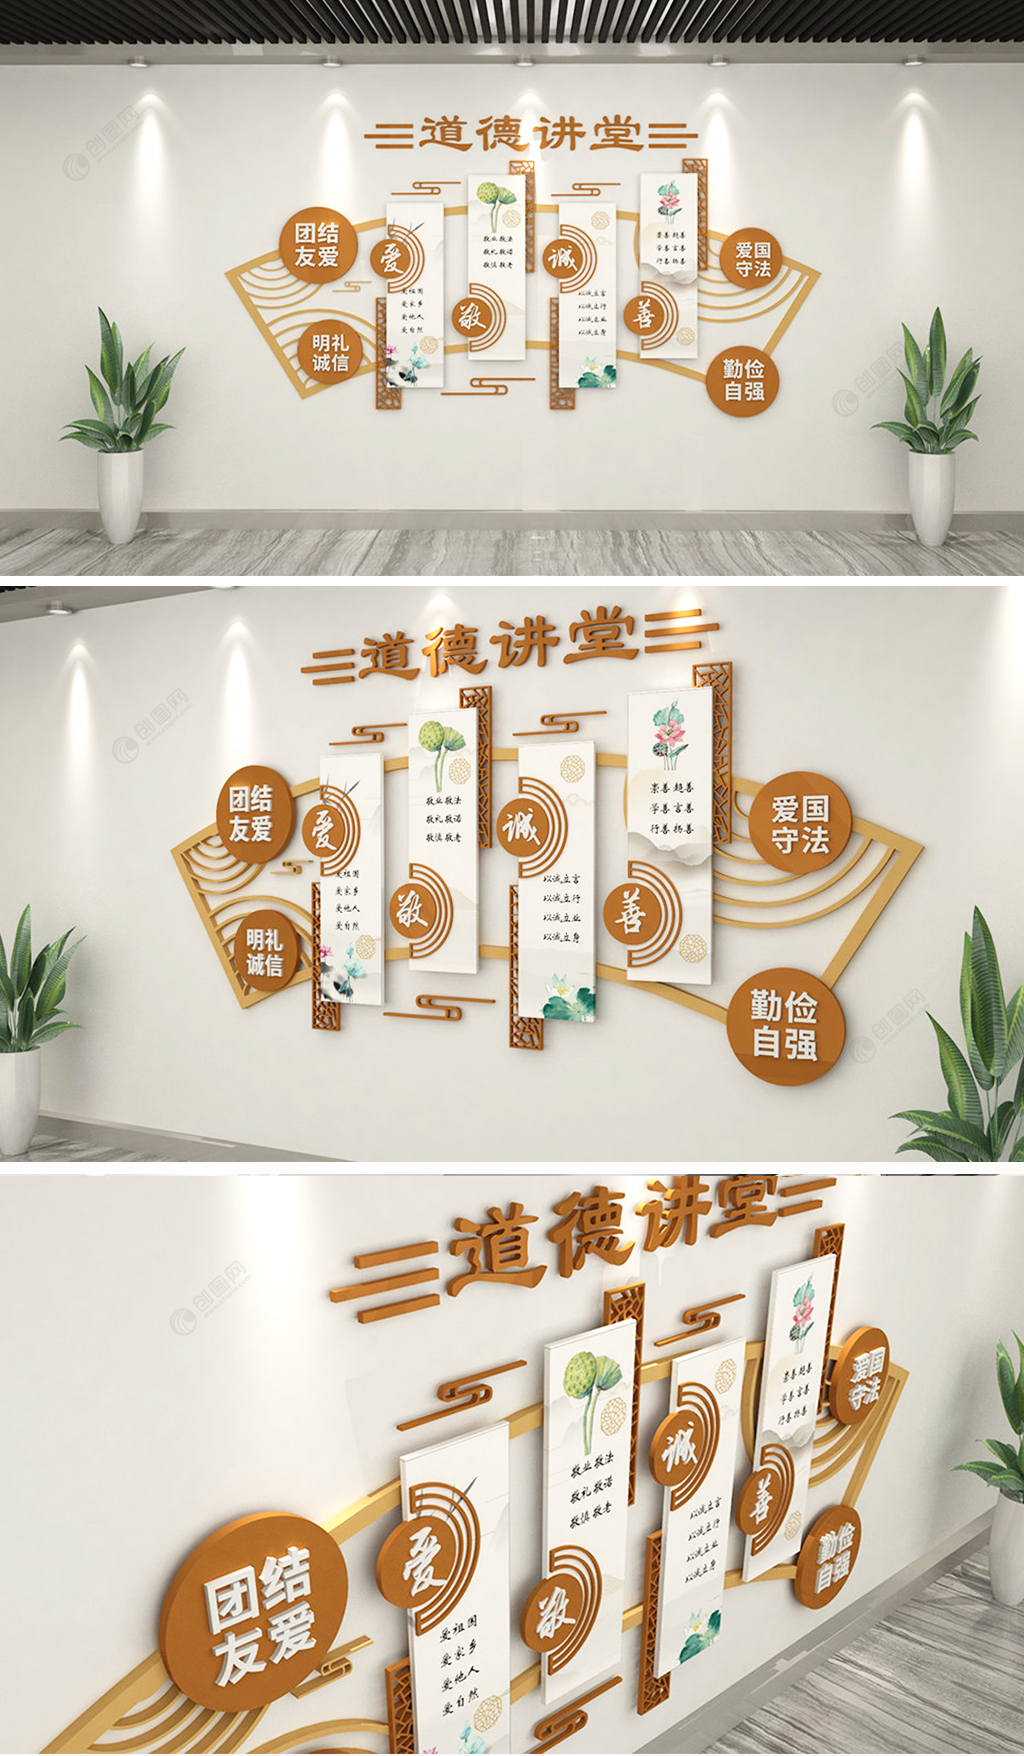 中式道德讲堂社区文化墙设计效果图